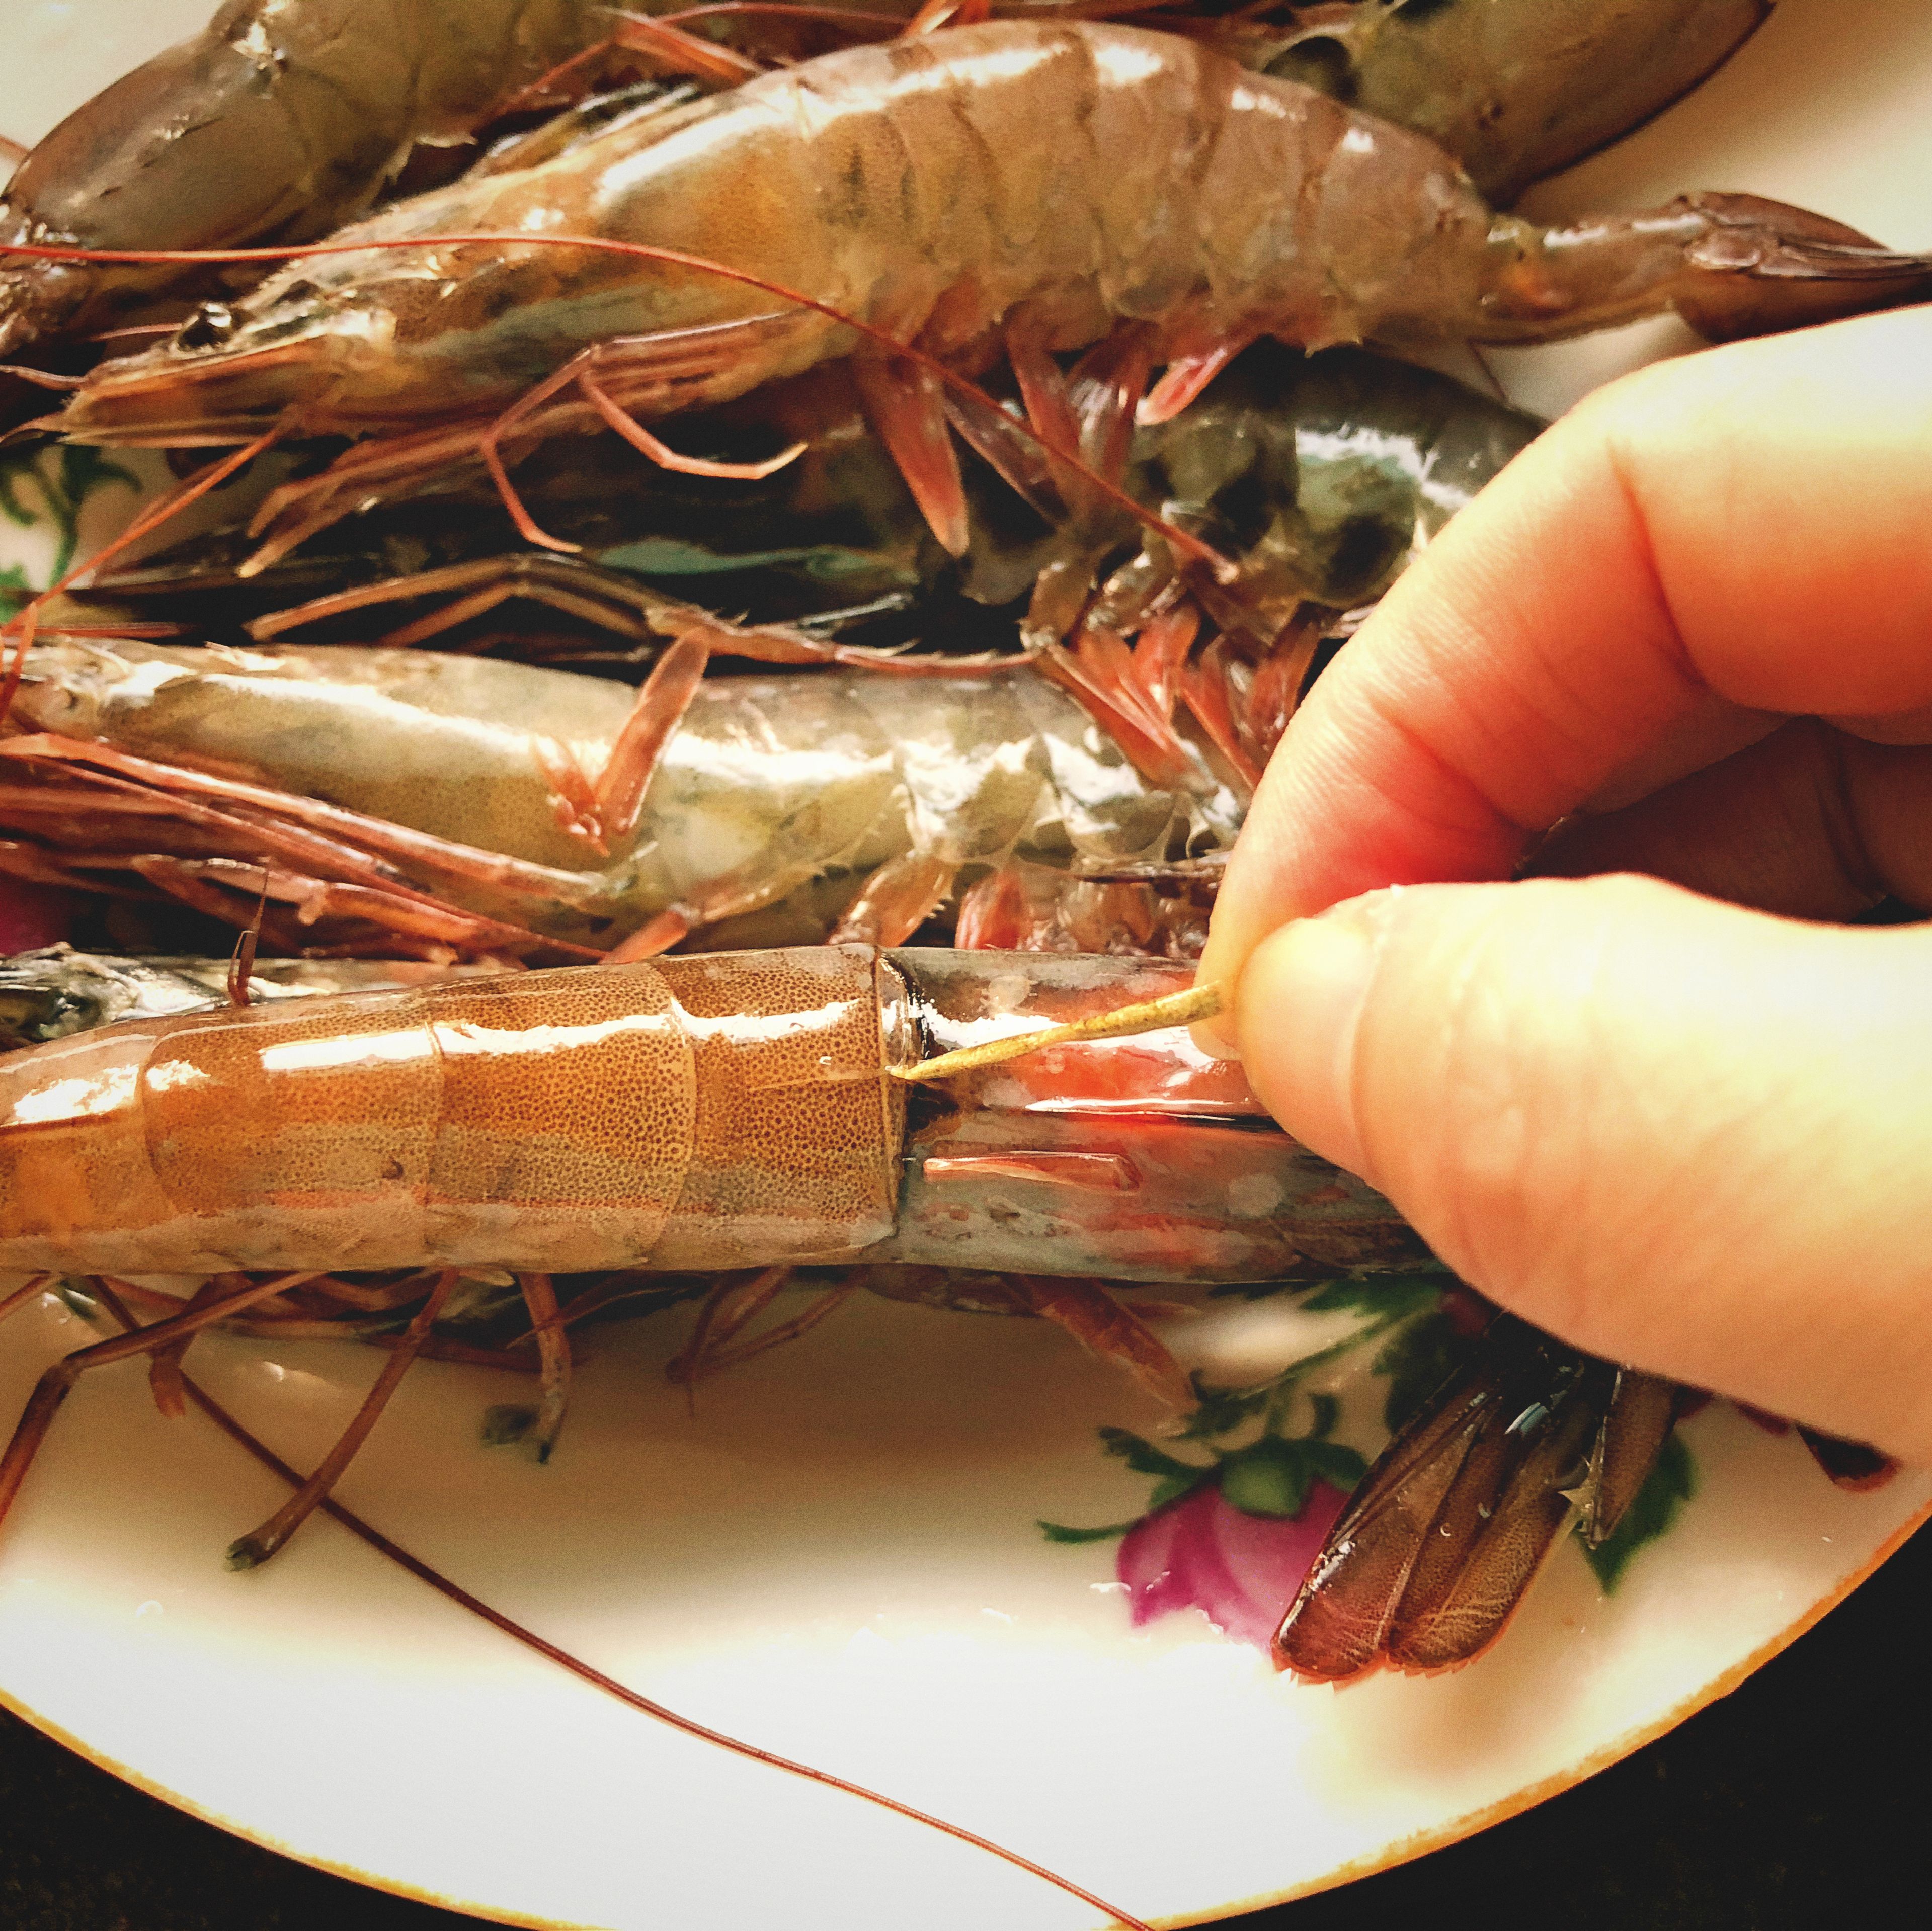 Clean the shrimp.